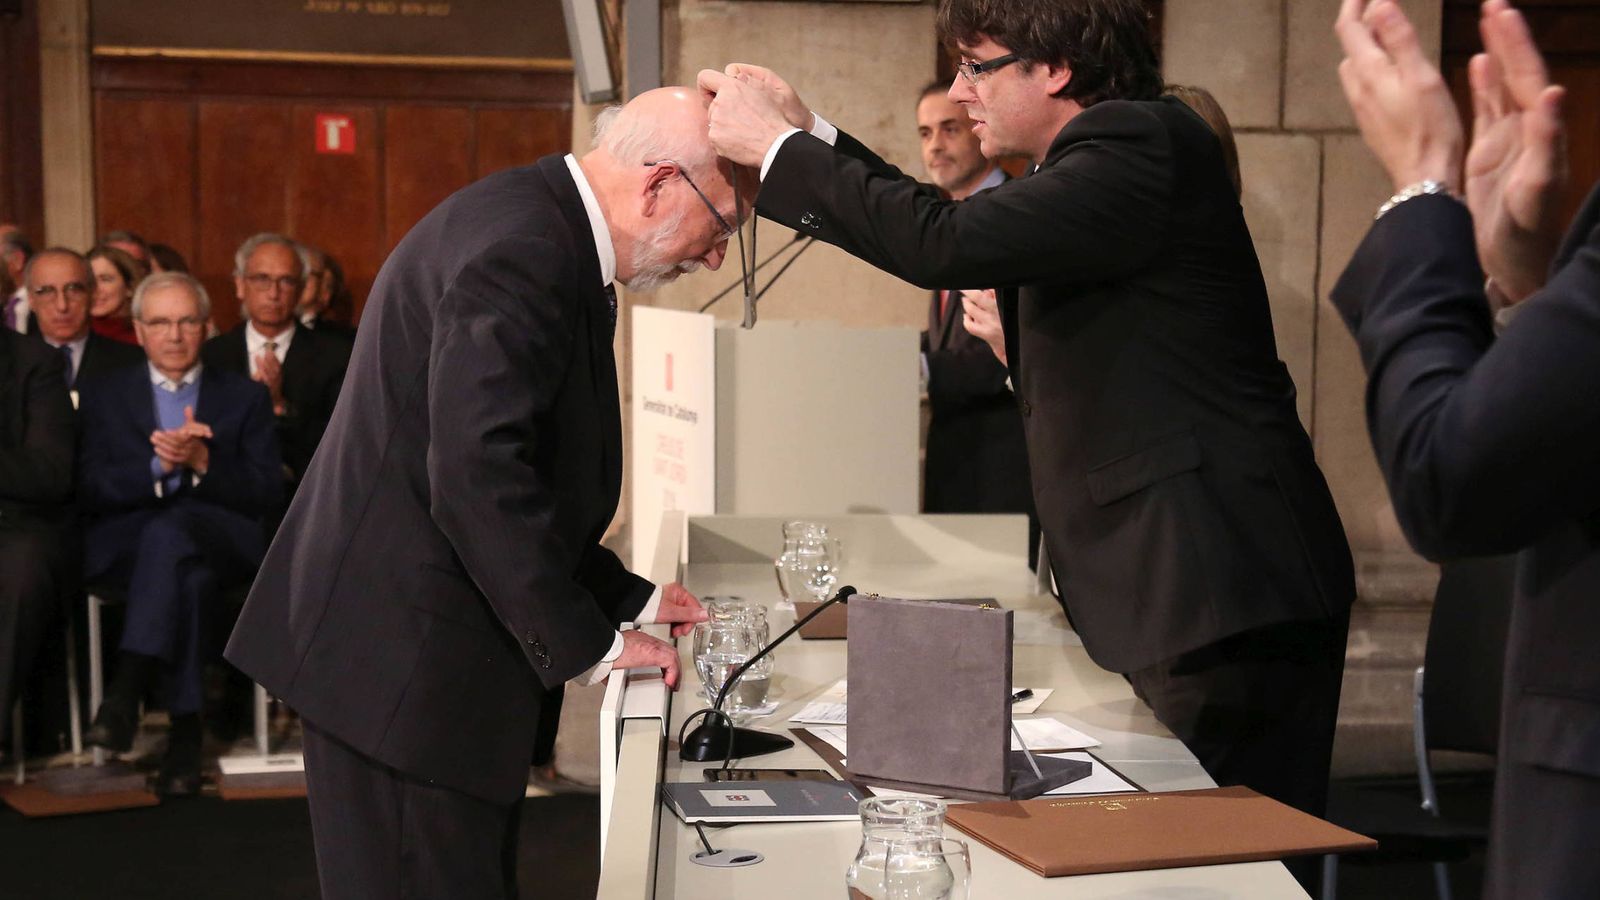 Foto: El presidente de la Generalitat, Carles Puigdemont, entrega la Creu de Sant Jordi al filólogo Artur Quintana. (gencat.cat)